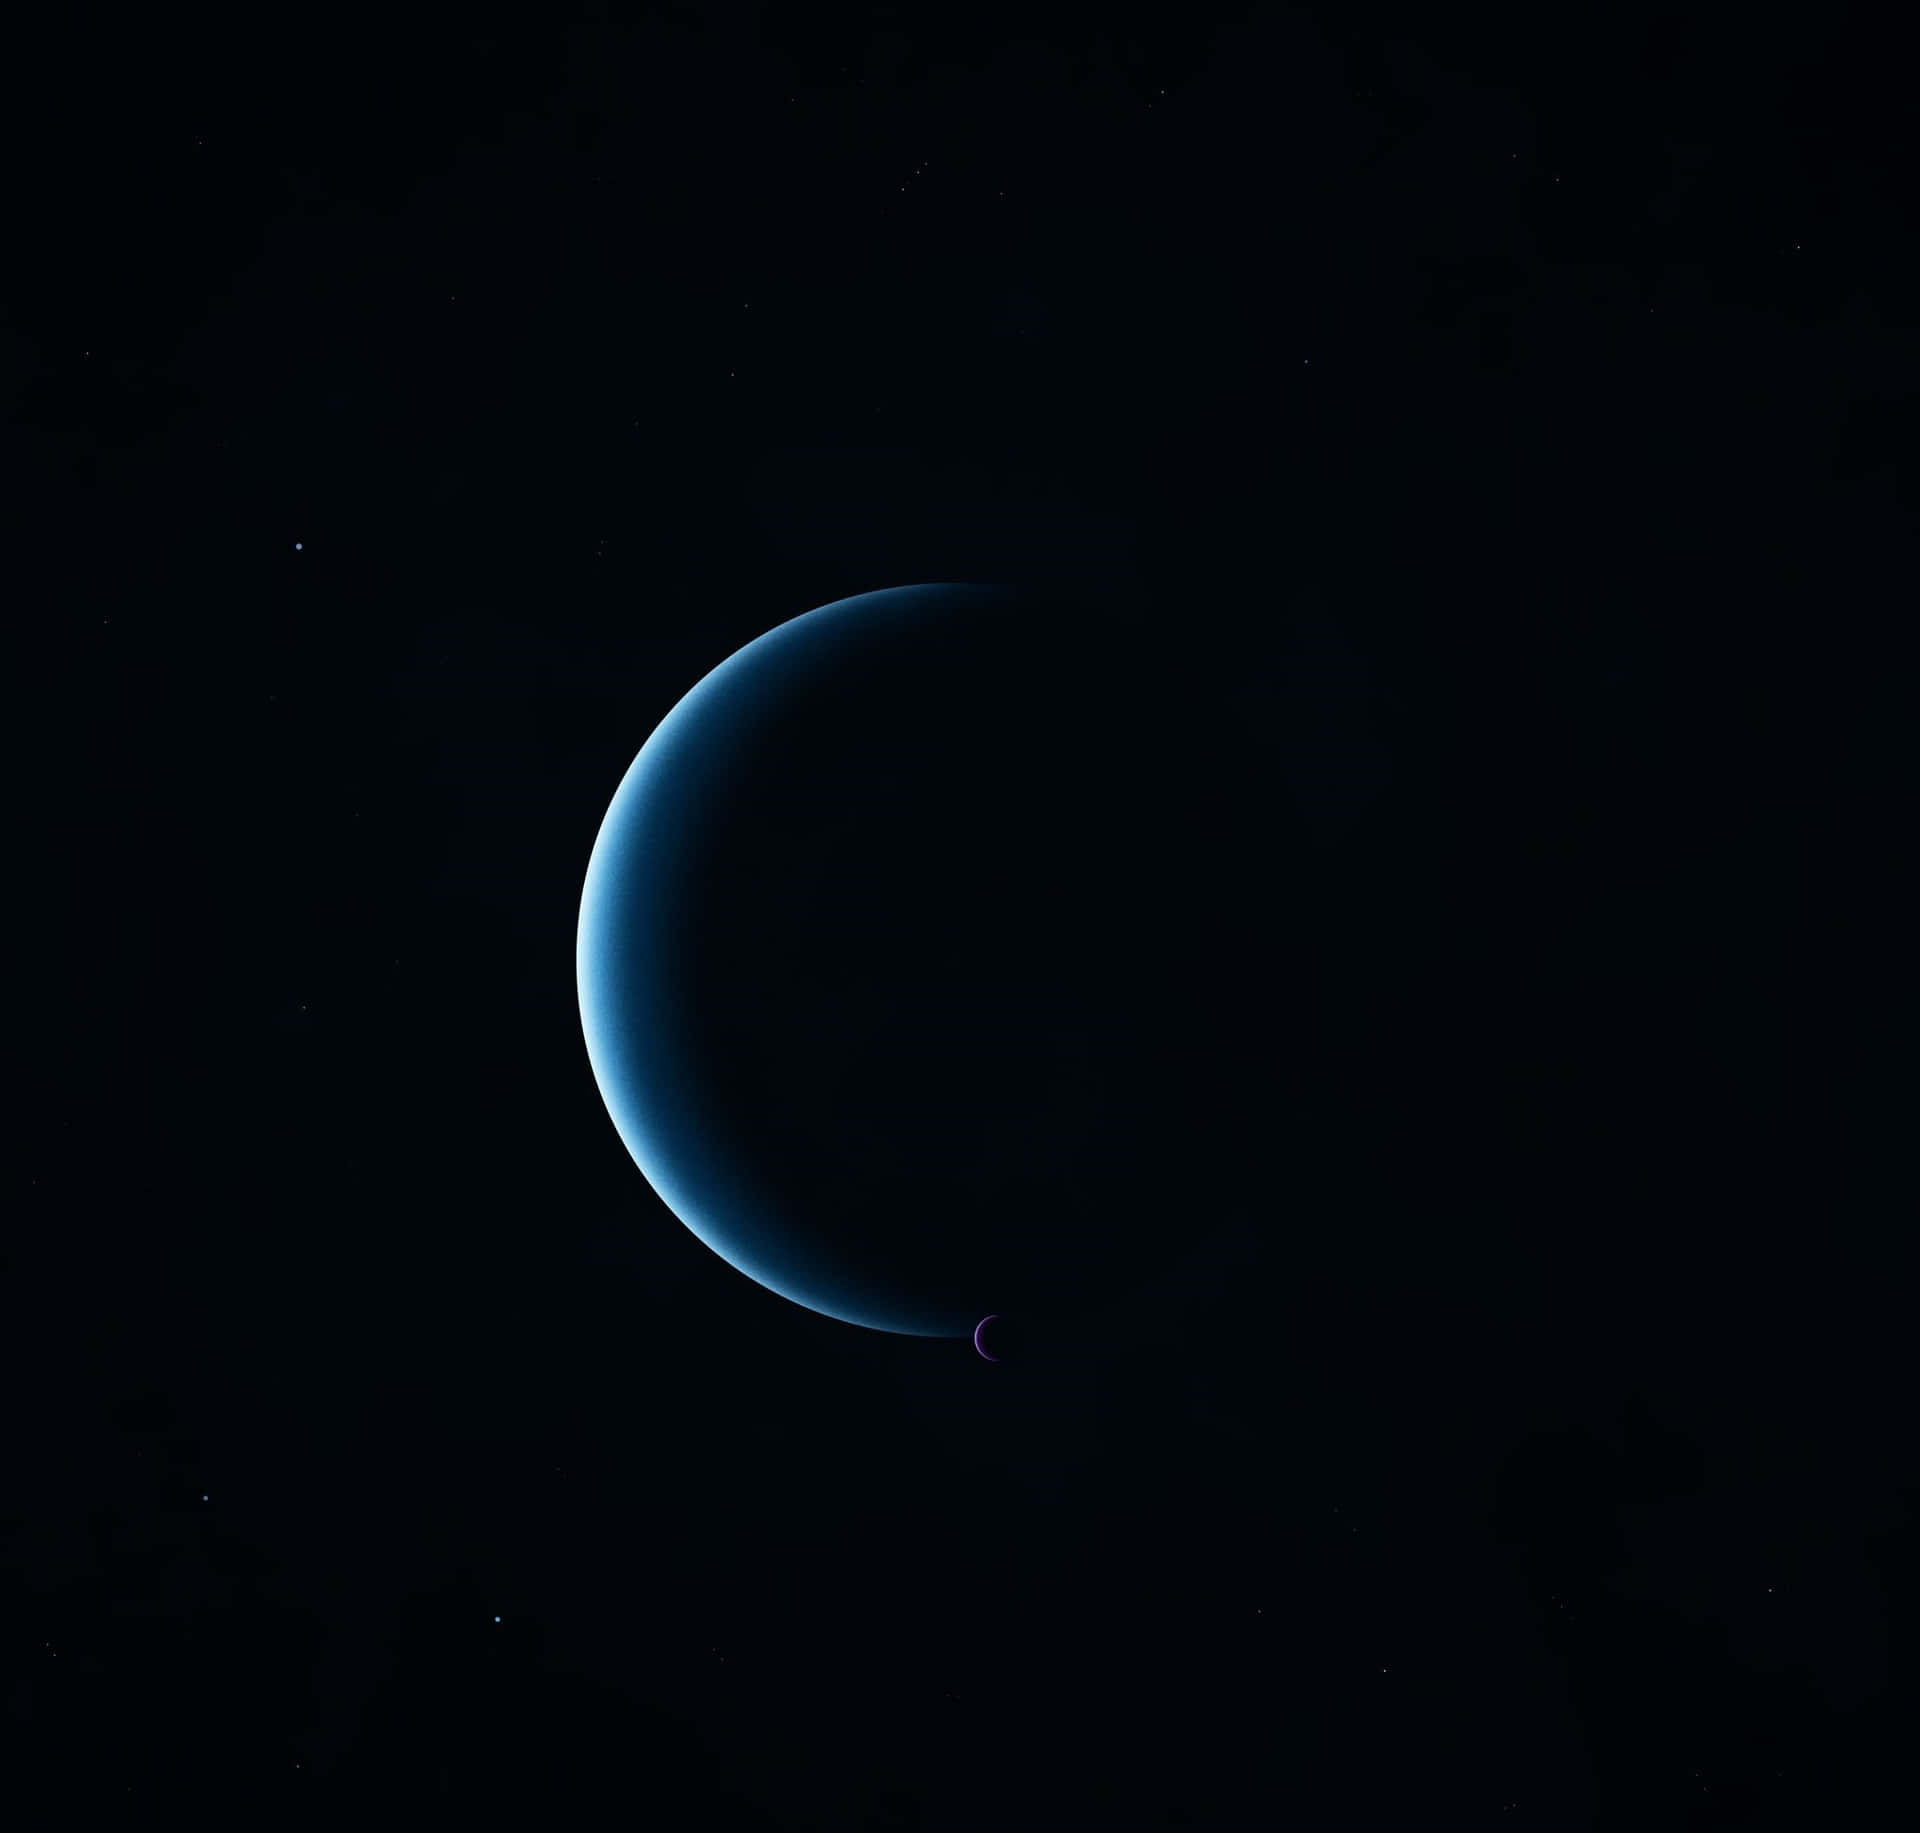 Etpragtfuldt Billede Af Den Blå Planet Neptun.